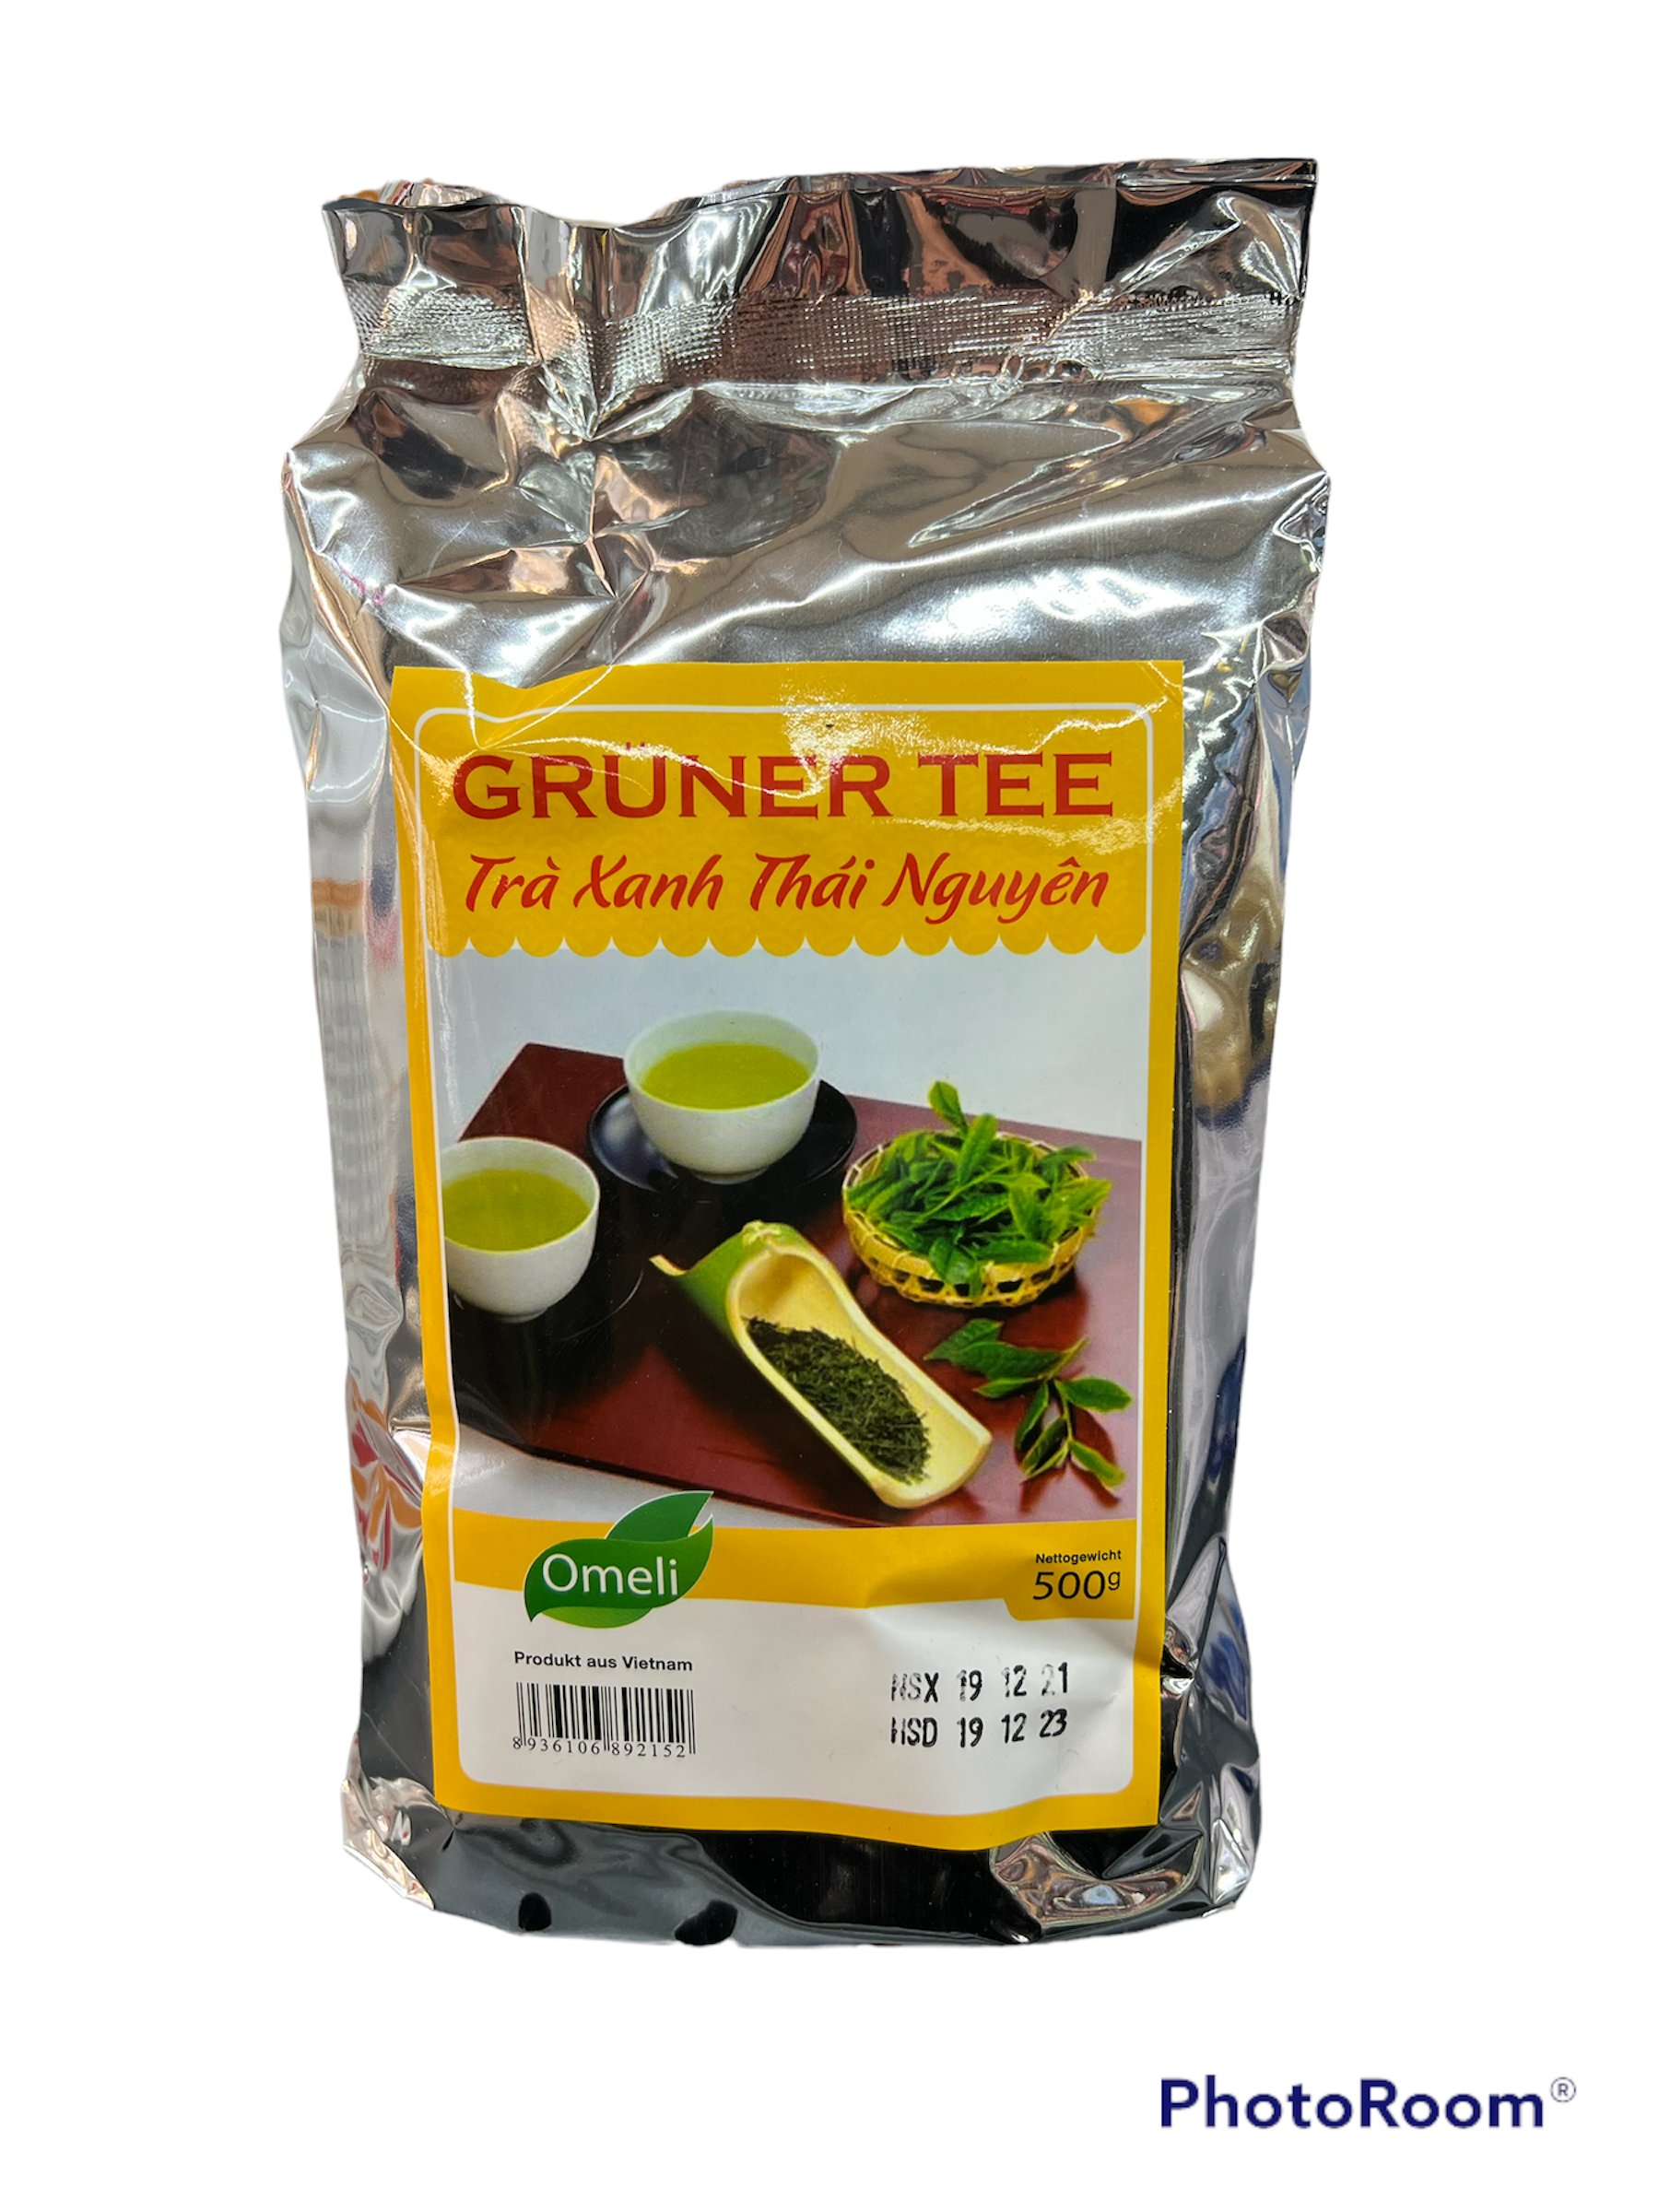 Grüner Tee - Trà xanh Thái Nguyên 500g Omeli